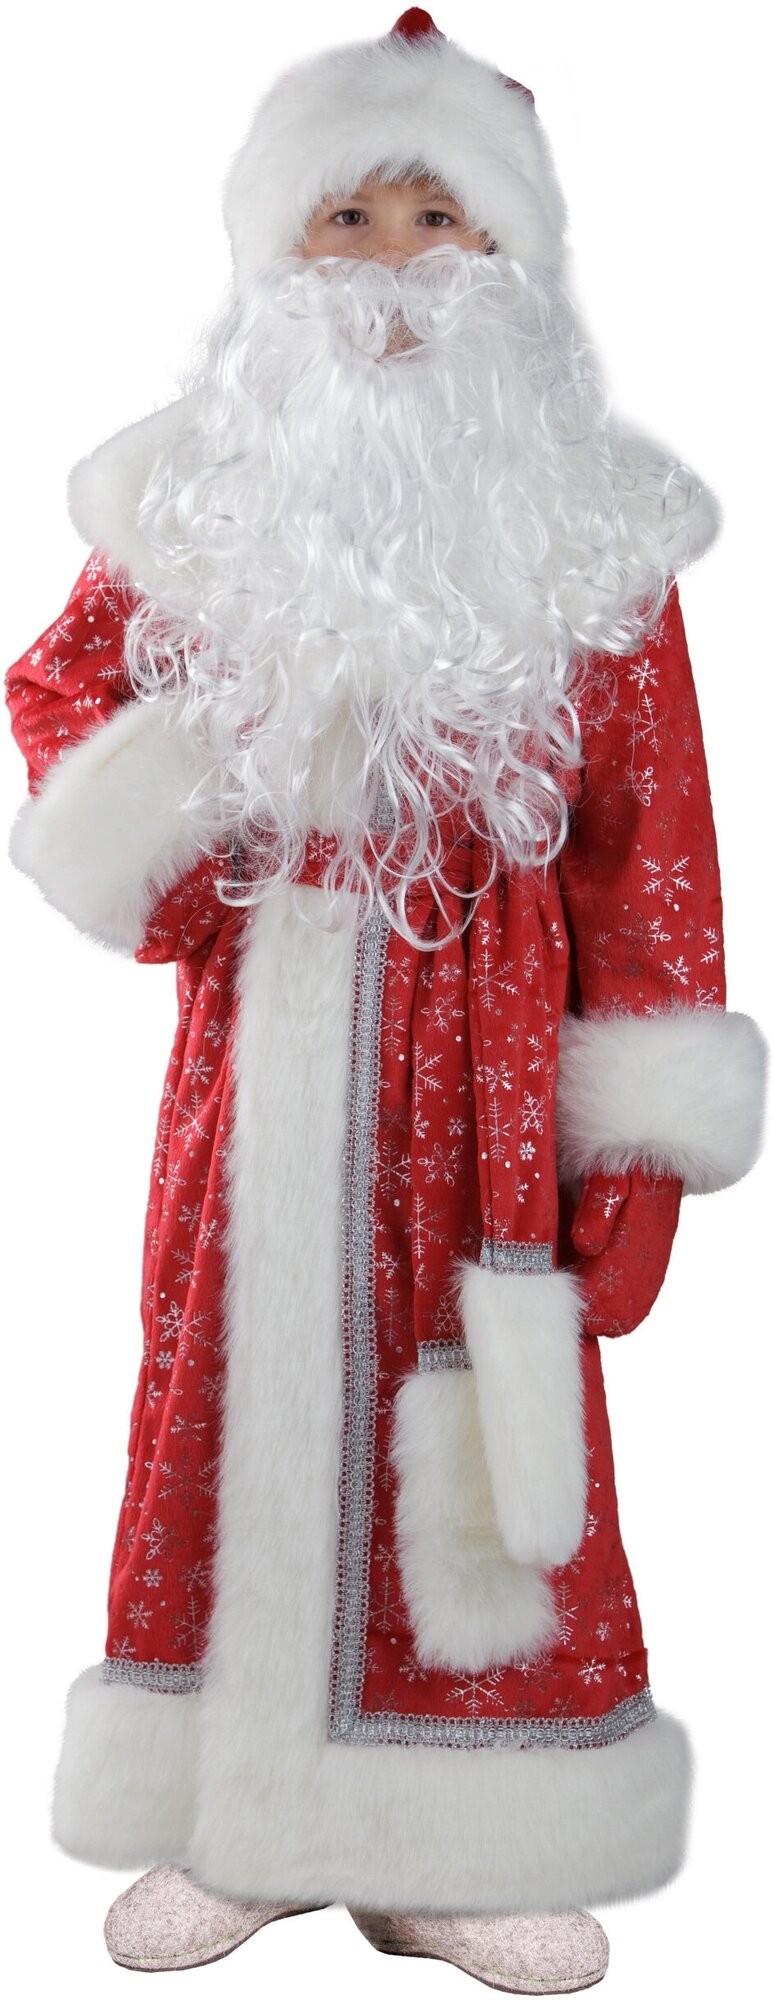 Карнавальный костюм Дед Мороз детский красный плюш Пуговка